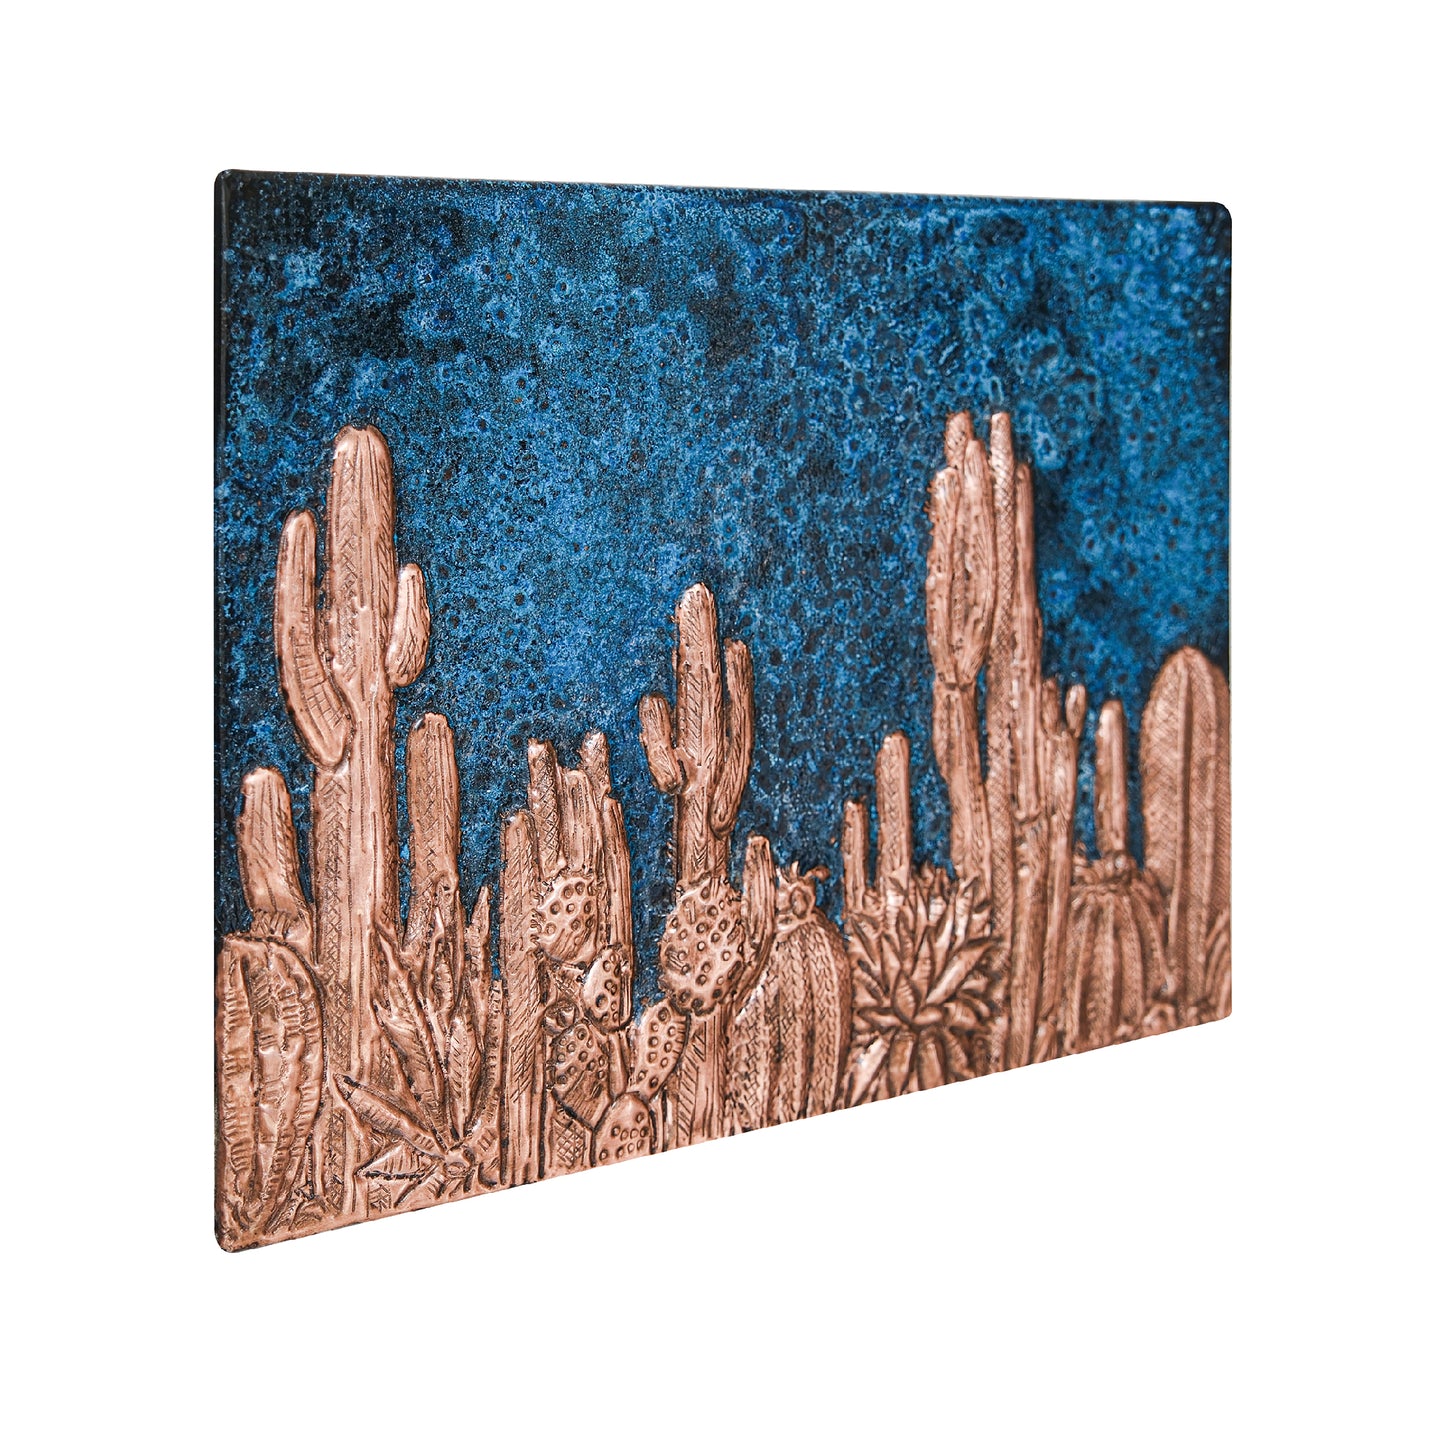 Metal Backsplash Tile Cactuses